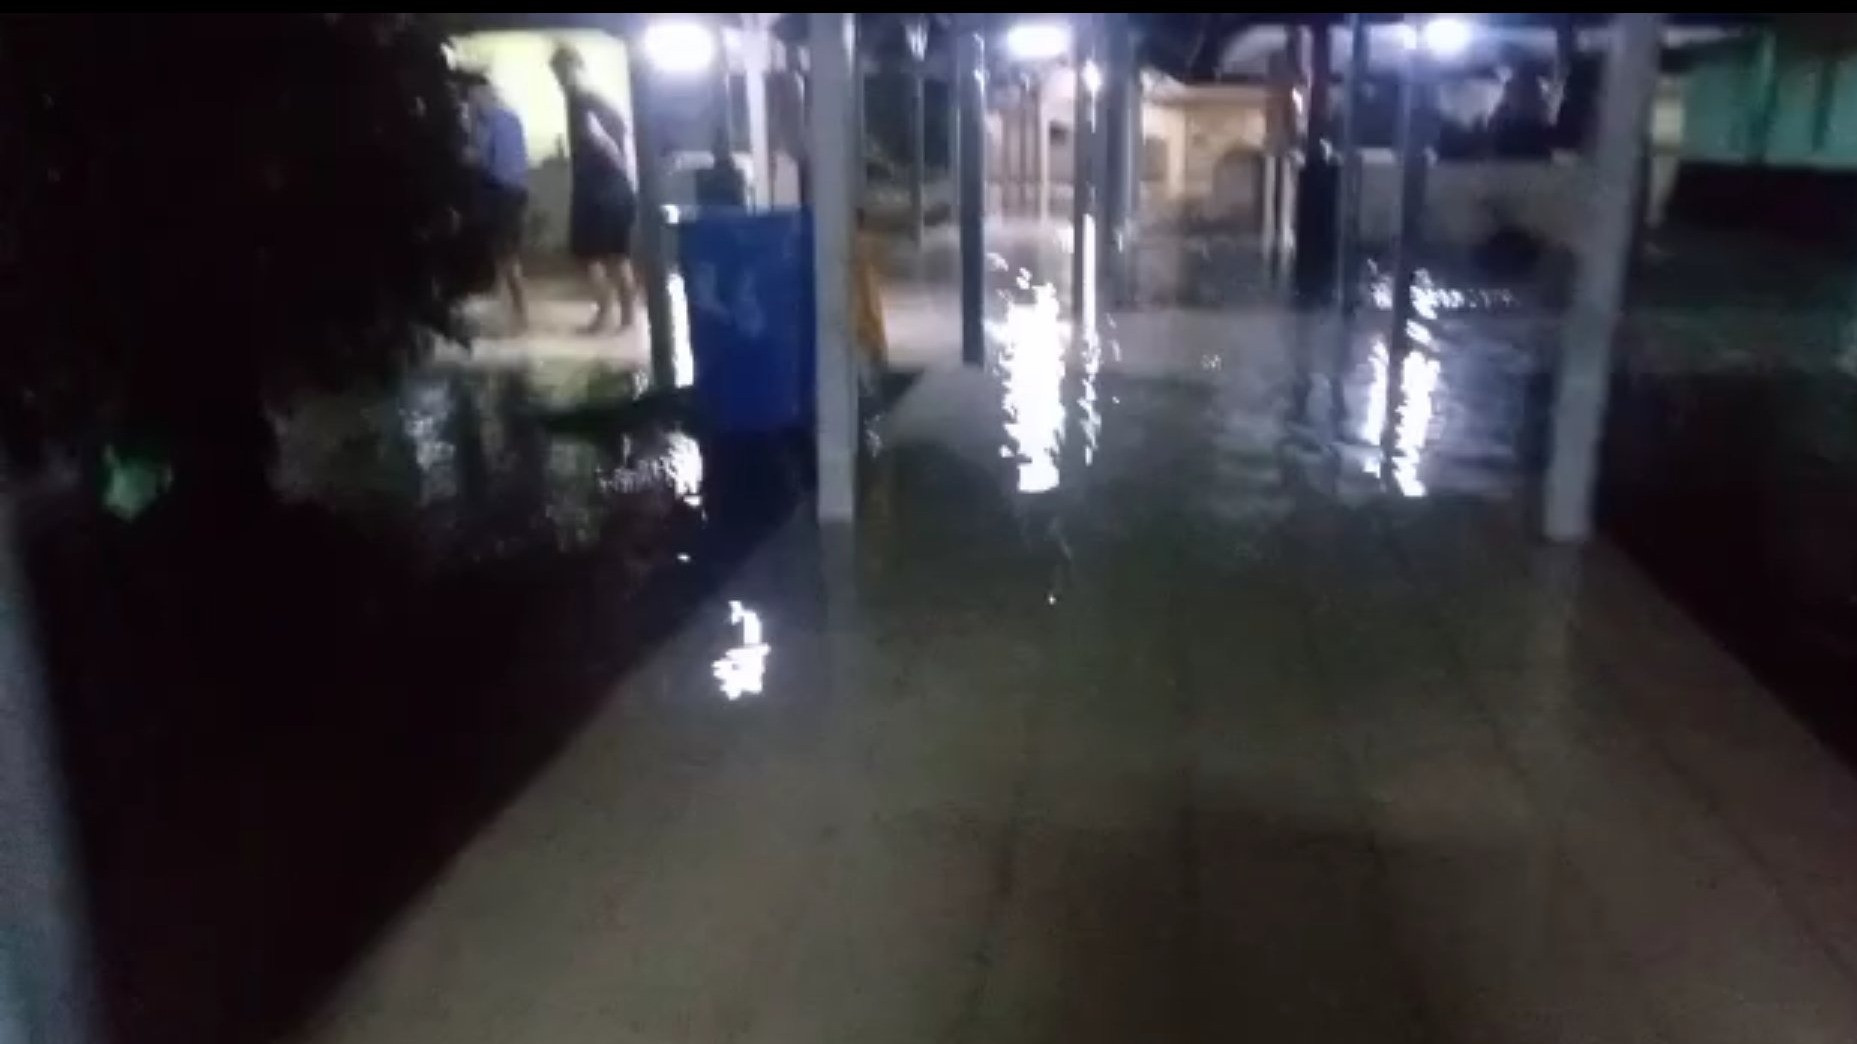 Rumah Sakit Umum Daerah (RSUD) Dokter Soekardjo di Kota Tasikmalaya, Jawa Barat, terendam banjir setelah hujan deras mengguyur wilayah itu sejak Jumat sore.